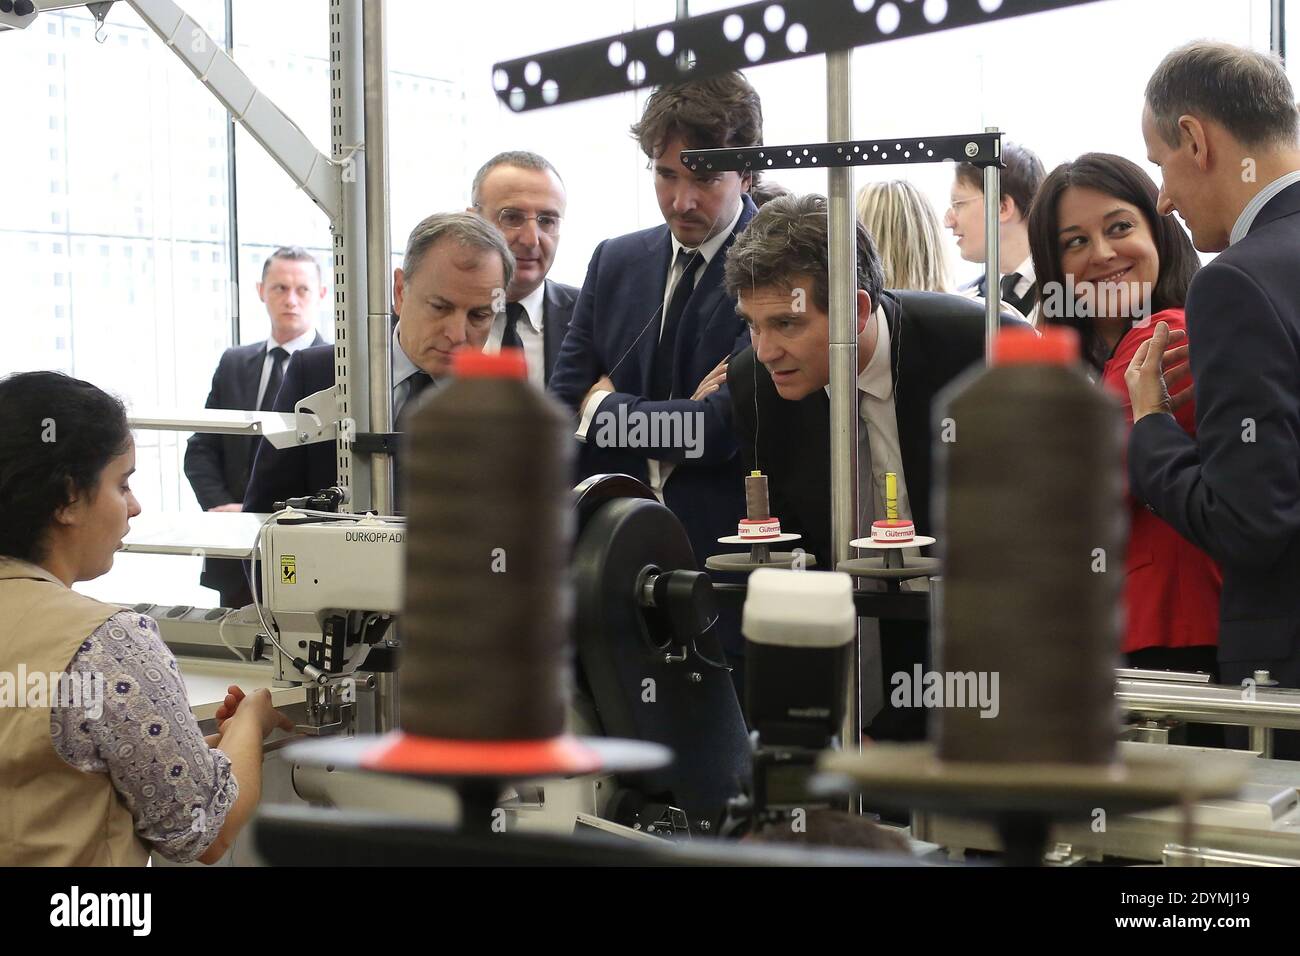 Långläsning: King besöker Patrick-Louis Vuitton i Paris